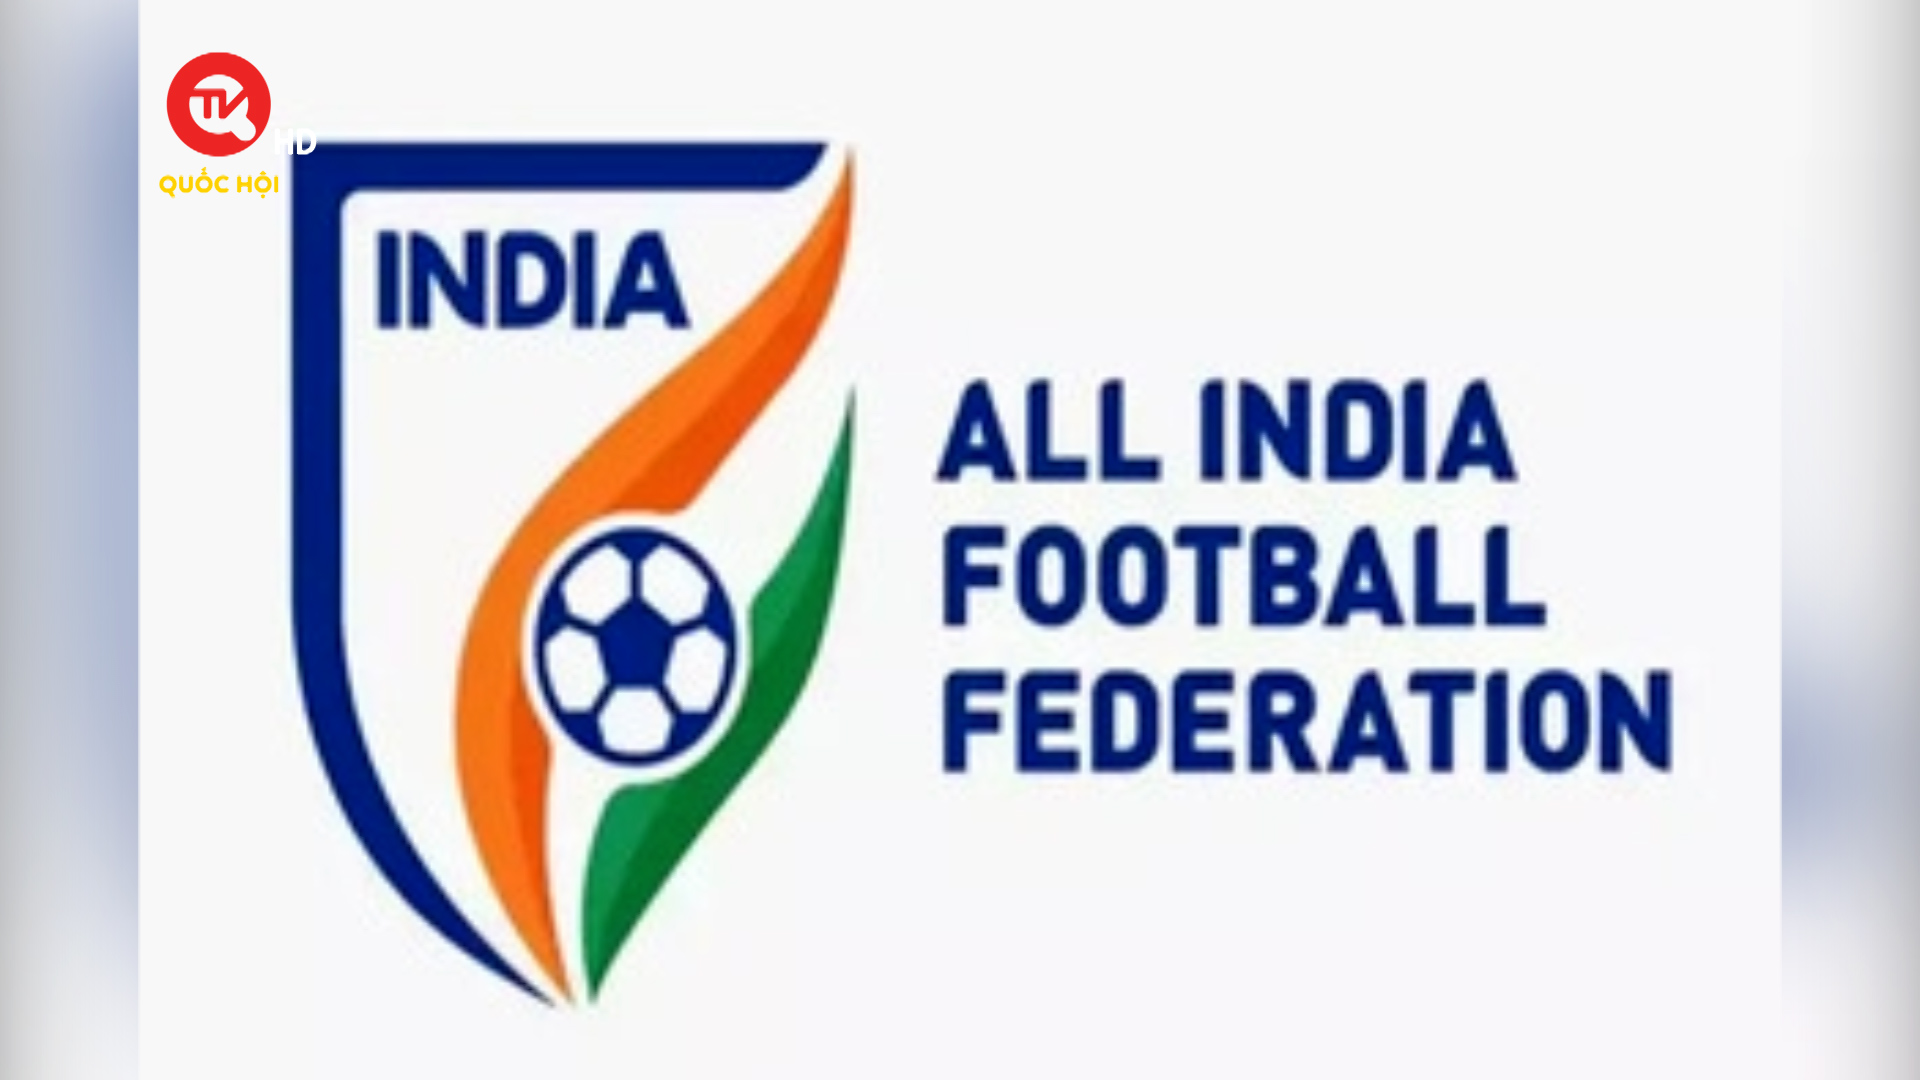 FIFA đình chỉ mọi tư cách thành viên của Liên đoàn Bóng đá Ấn Độ